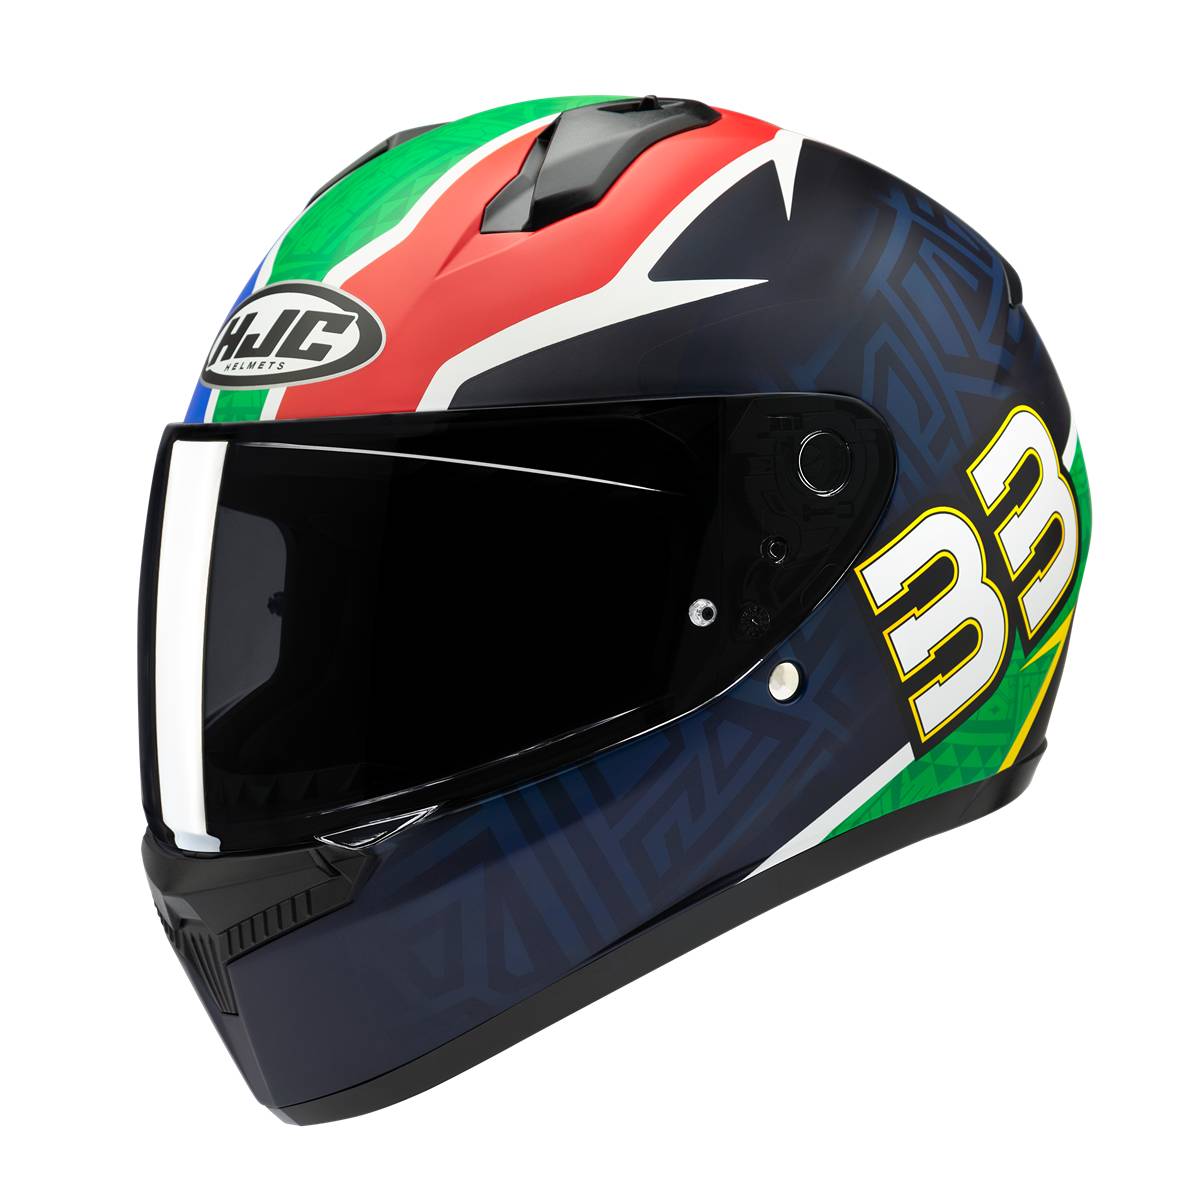 Image of EU HJC C10 Brad Binder 33 Full Face Helmet Black Green Taille S